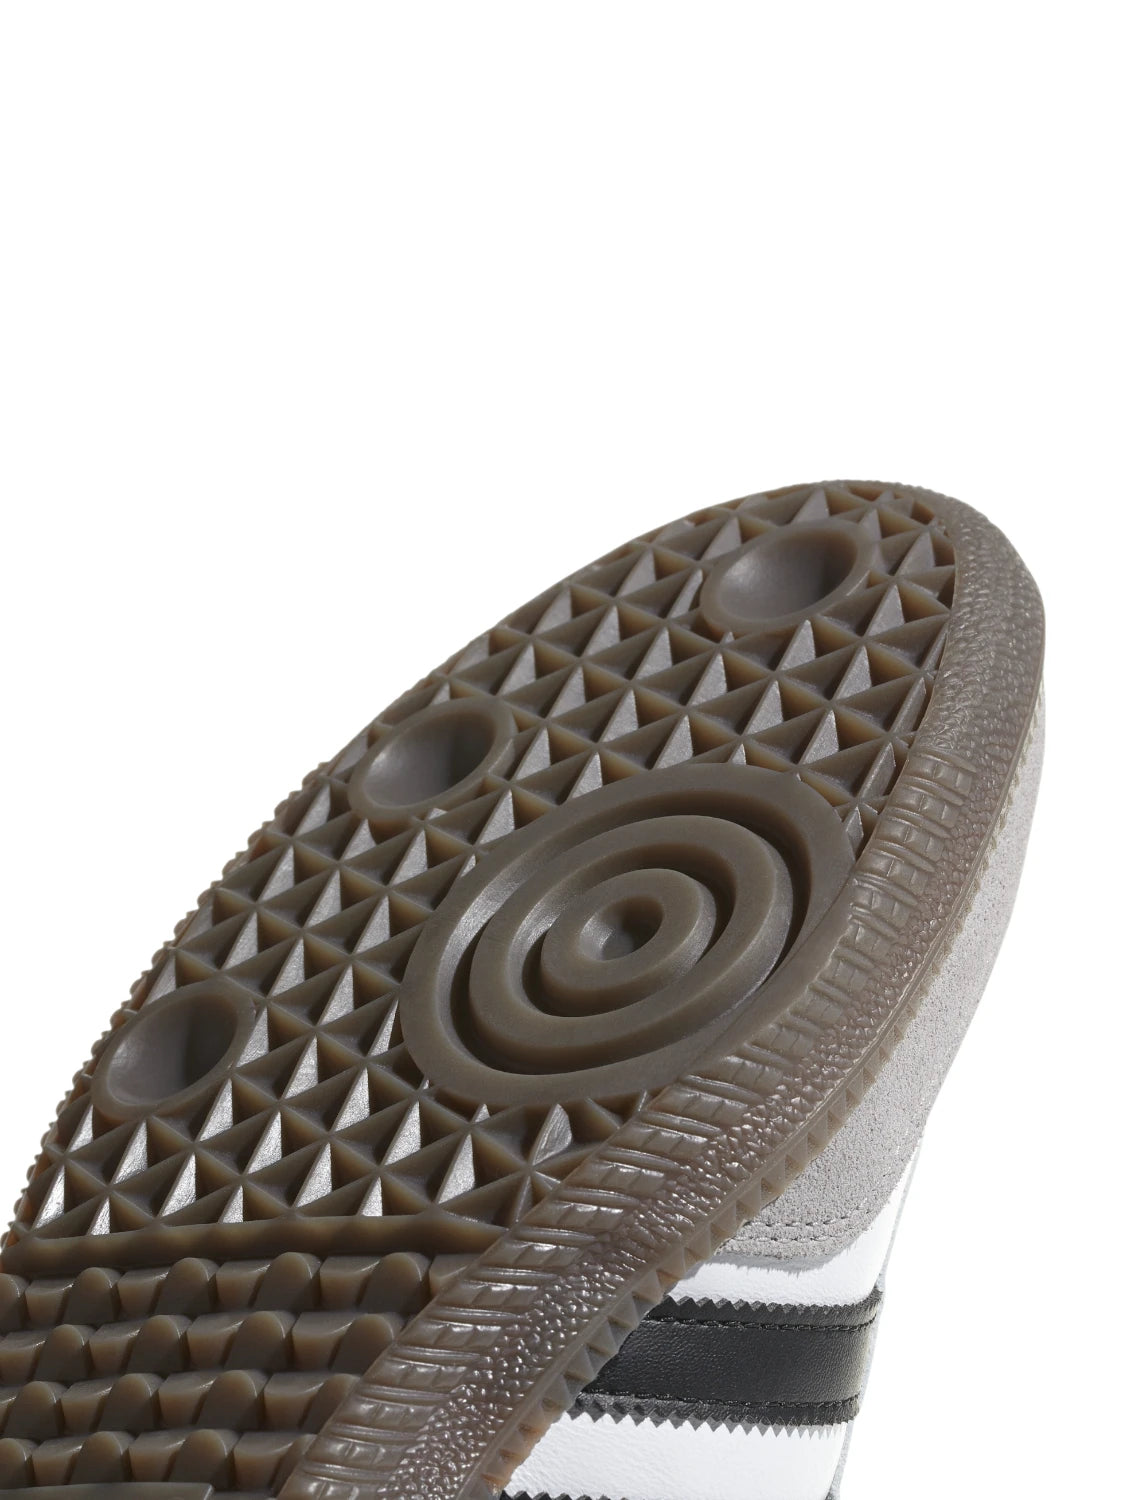 SCARPE SAMBA OG-Adidas Originals-Sneakers-Vittorio Citro Boutique